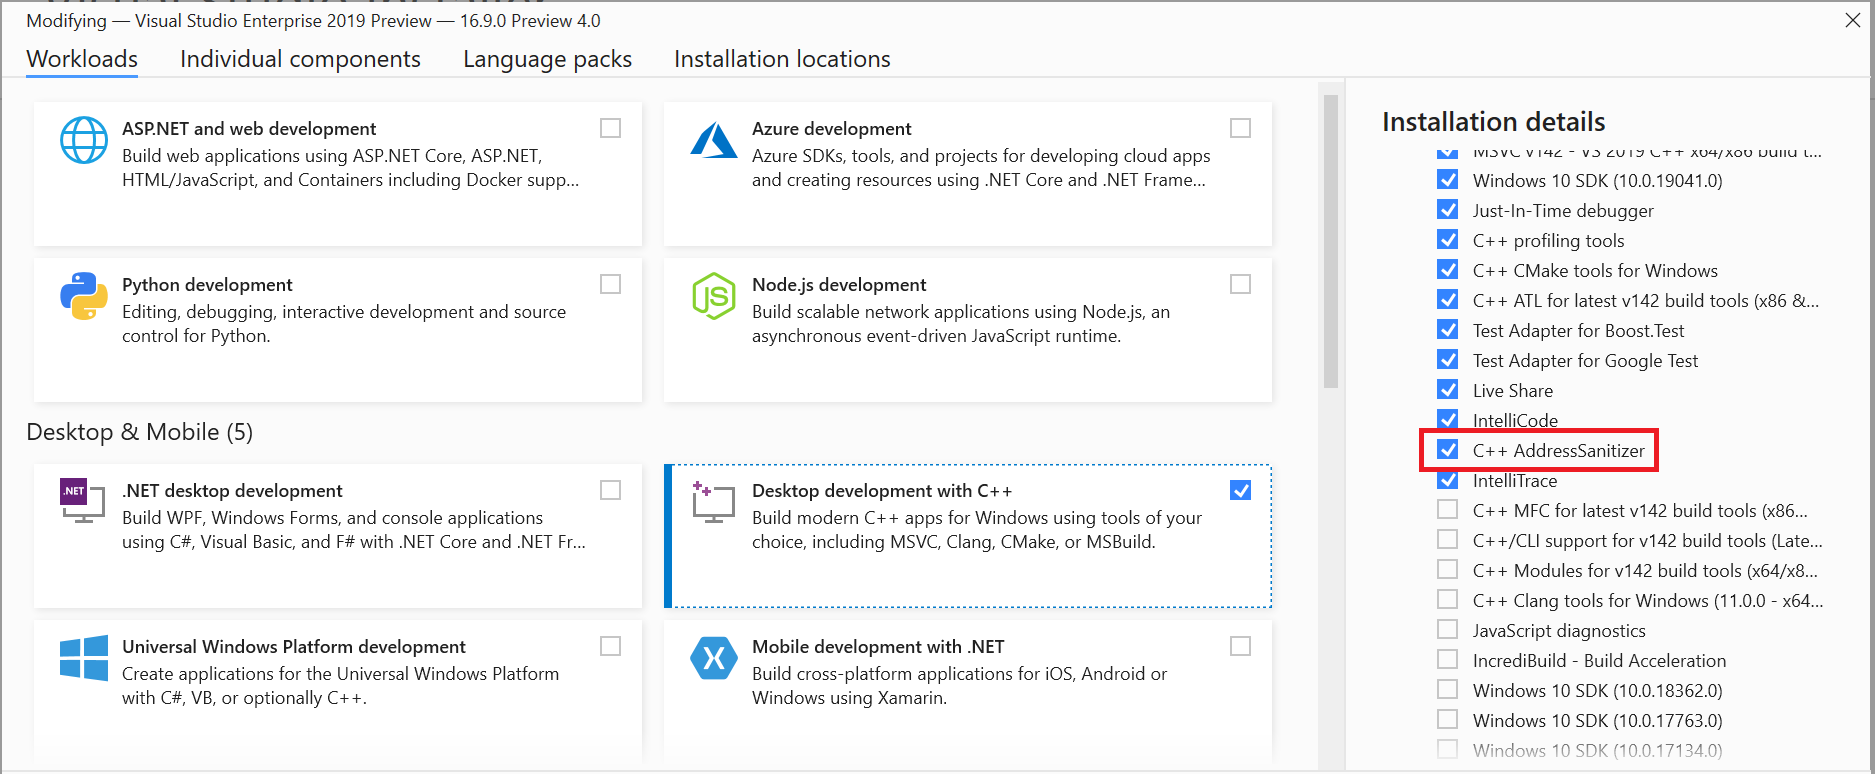 Instalator programu Visual Studio zrzut ekranu z wyróżnionym składnikiem C++ AddressSanitizer